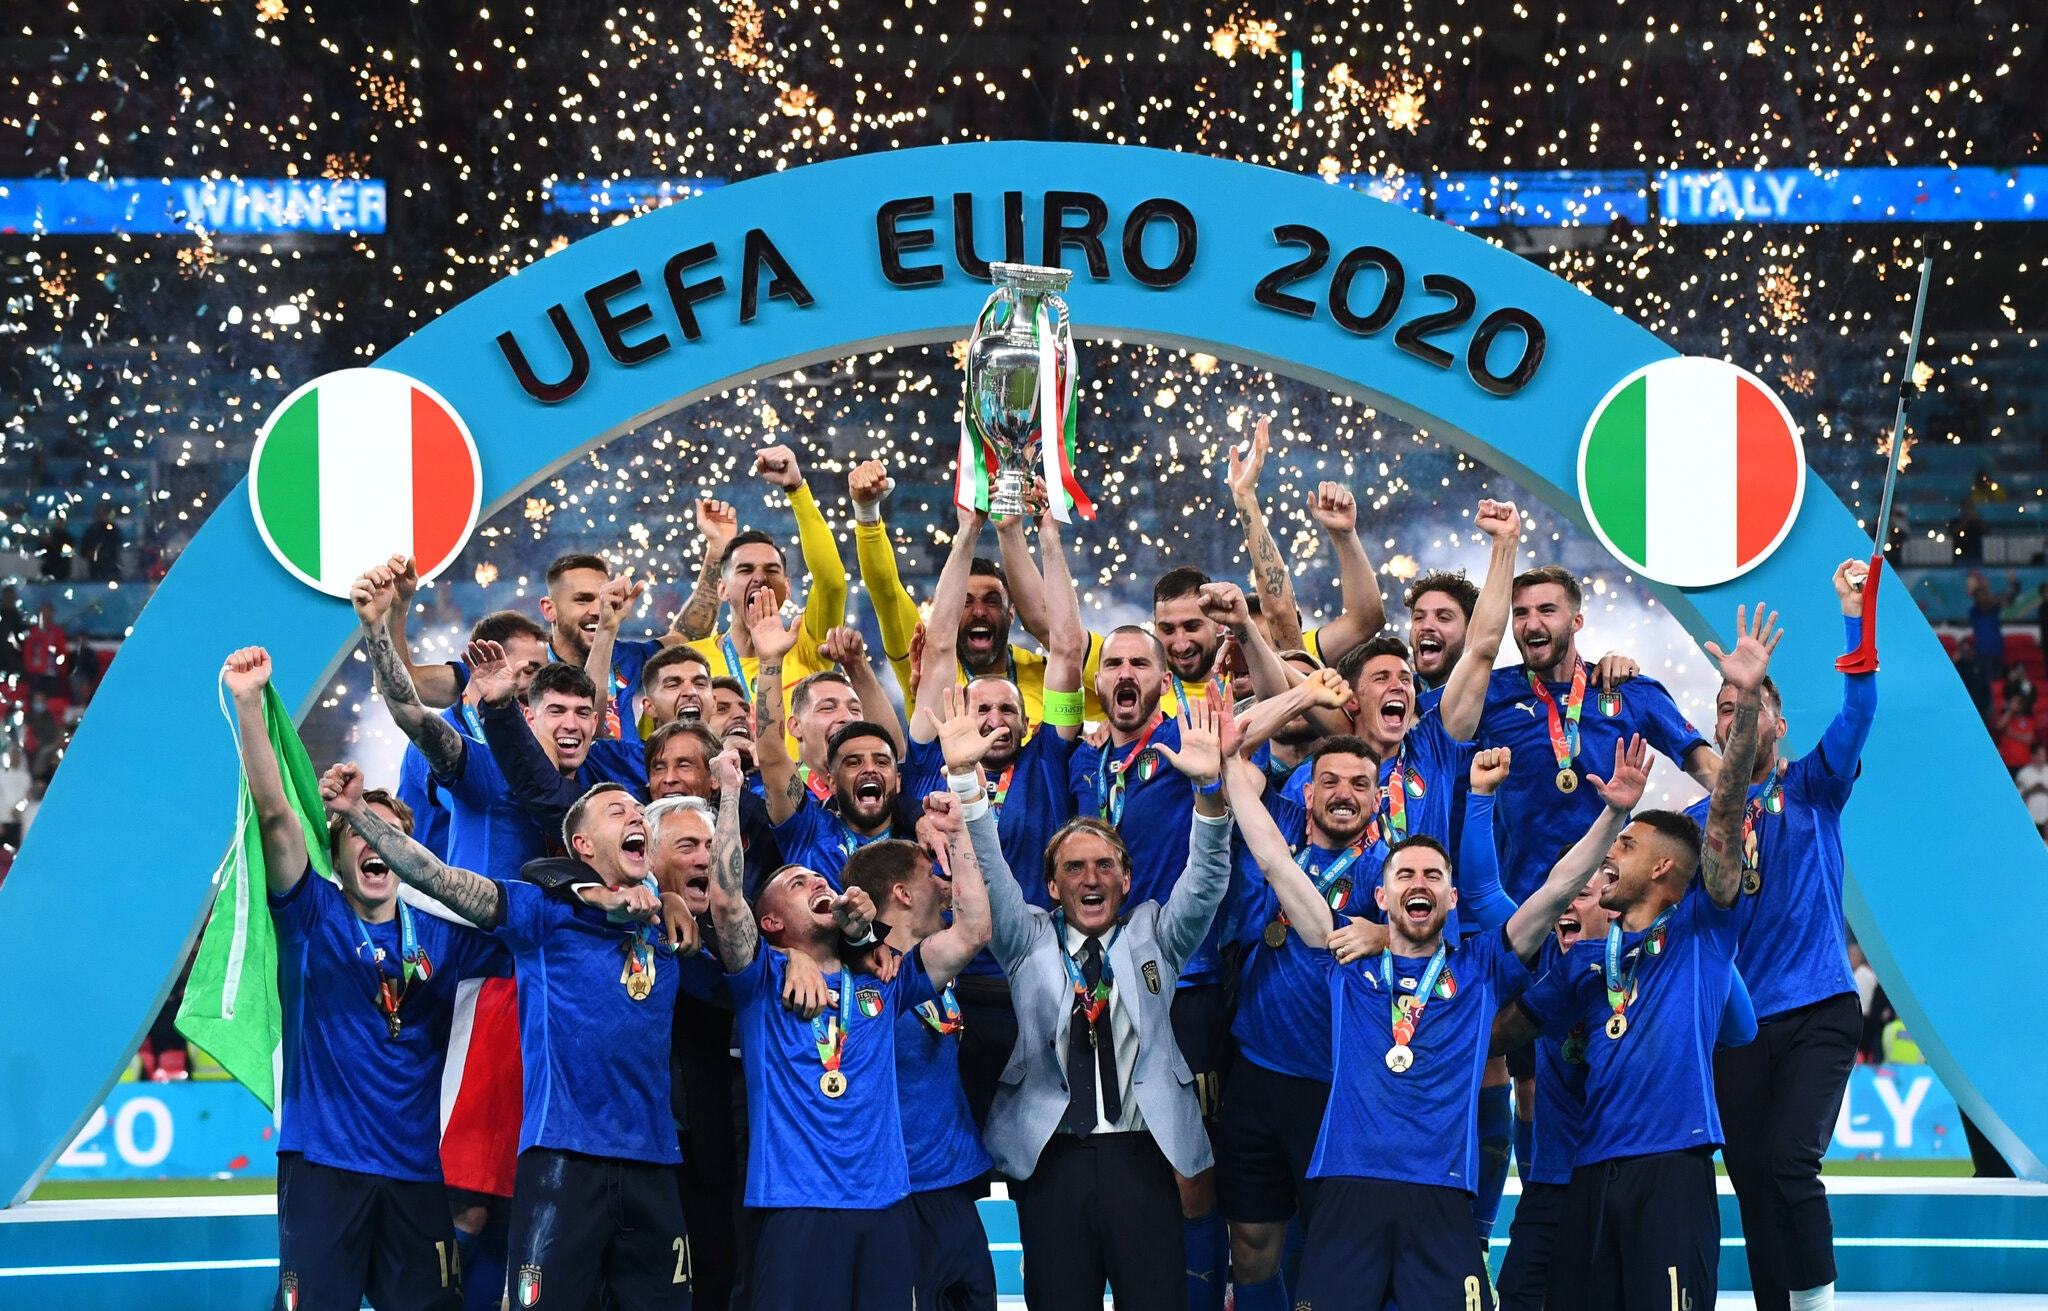 Anh và Italia chiếm quân đông đảo trong Đội hình tiêu biểu mùa giải EURO 2020